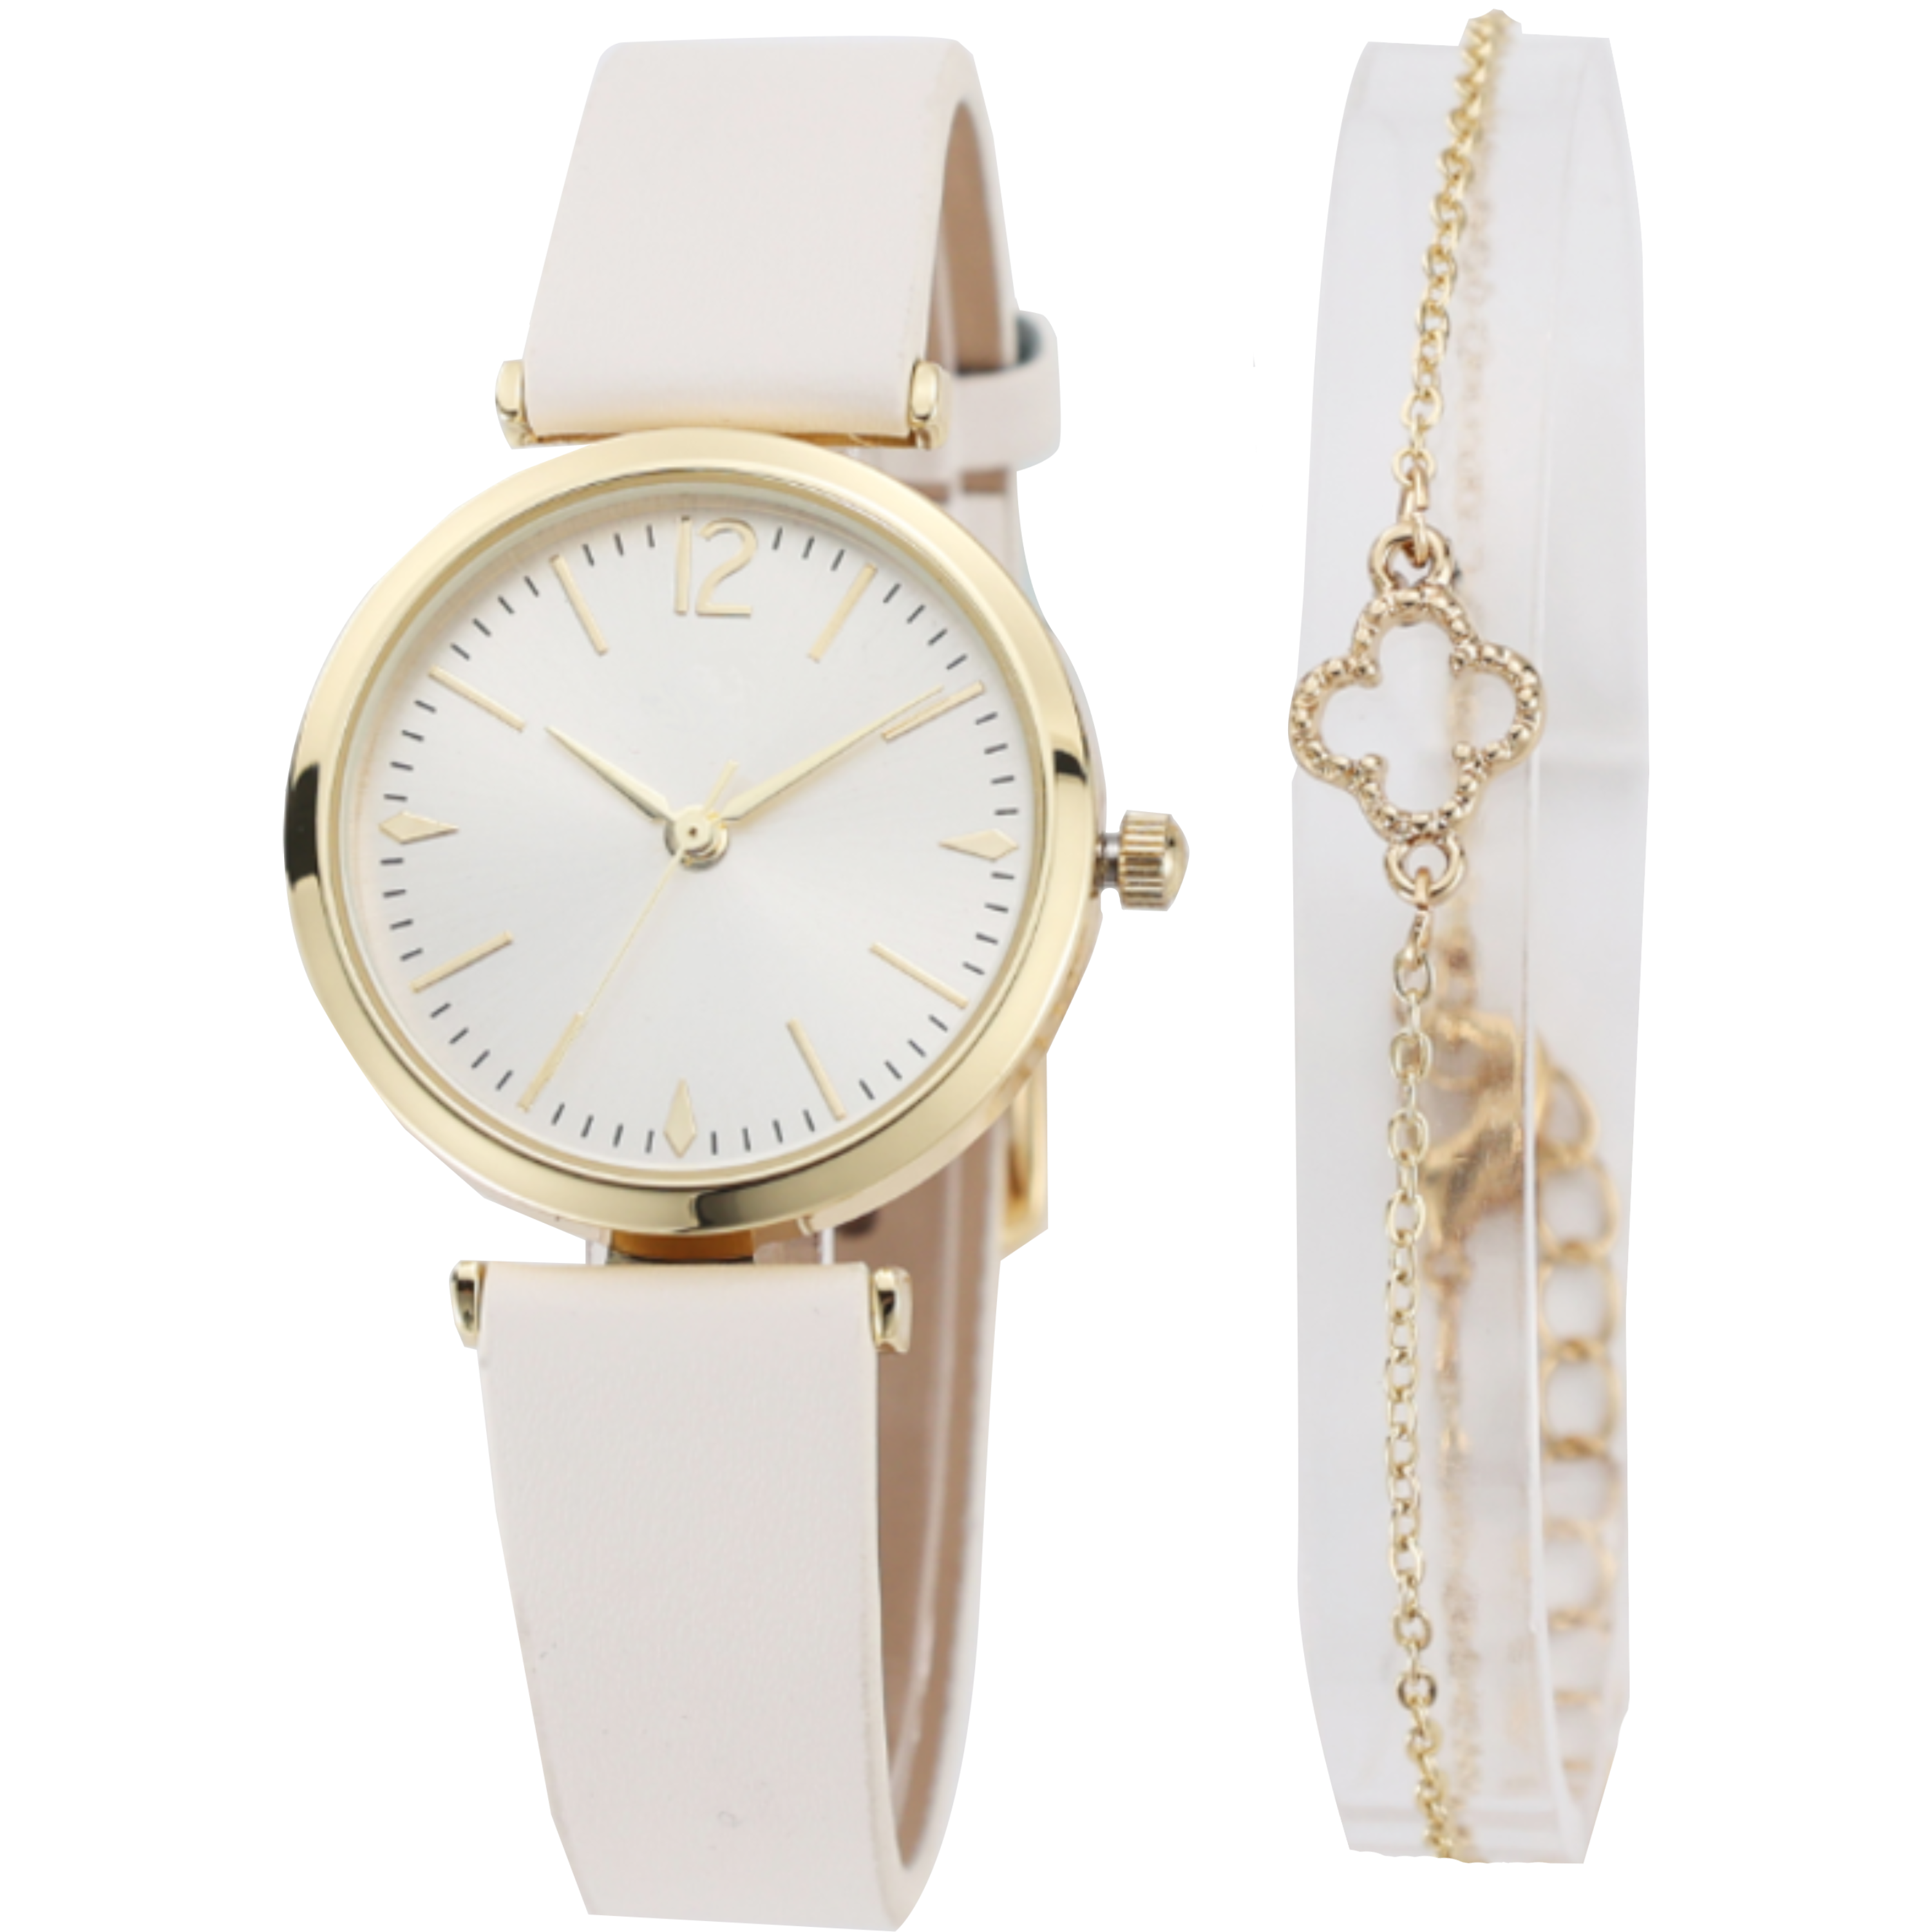 שעון יד לאישה עם צמיד COMTEX SY14 30mm - צבע זהב ורוד אחריות לשנה ע